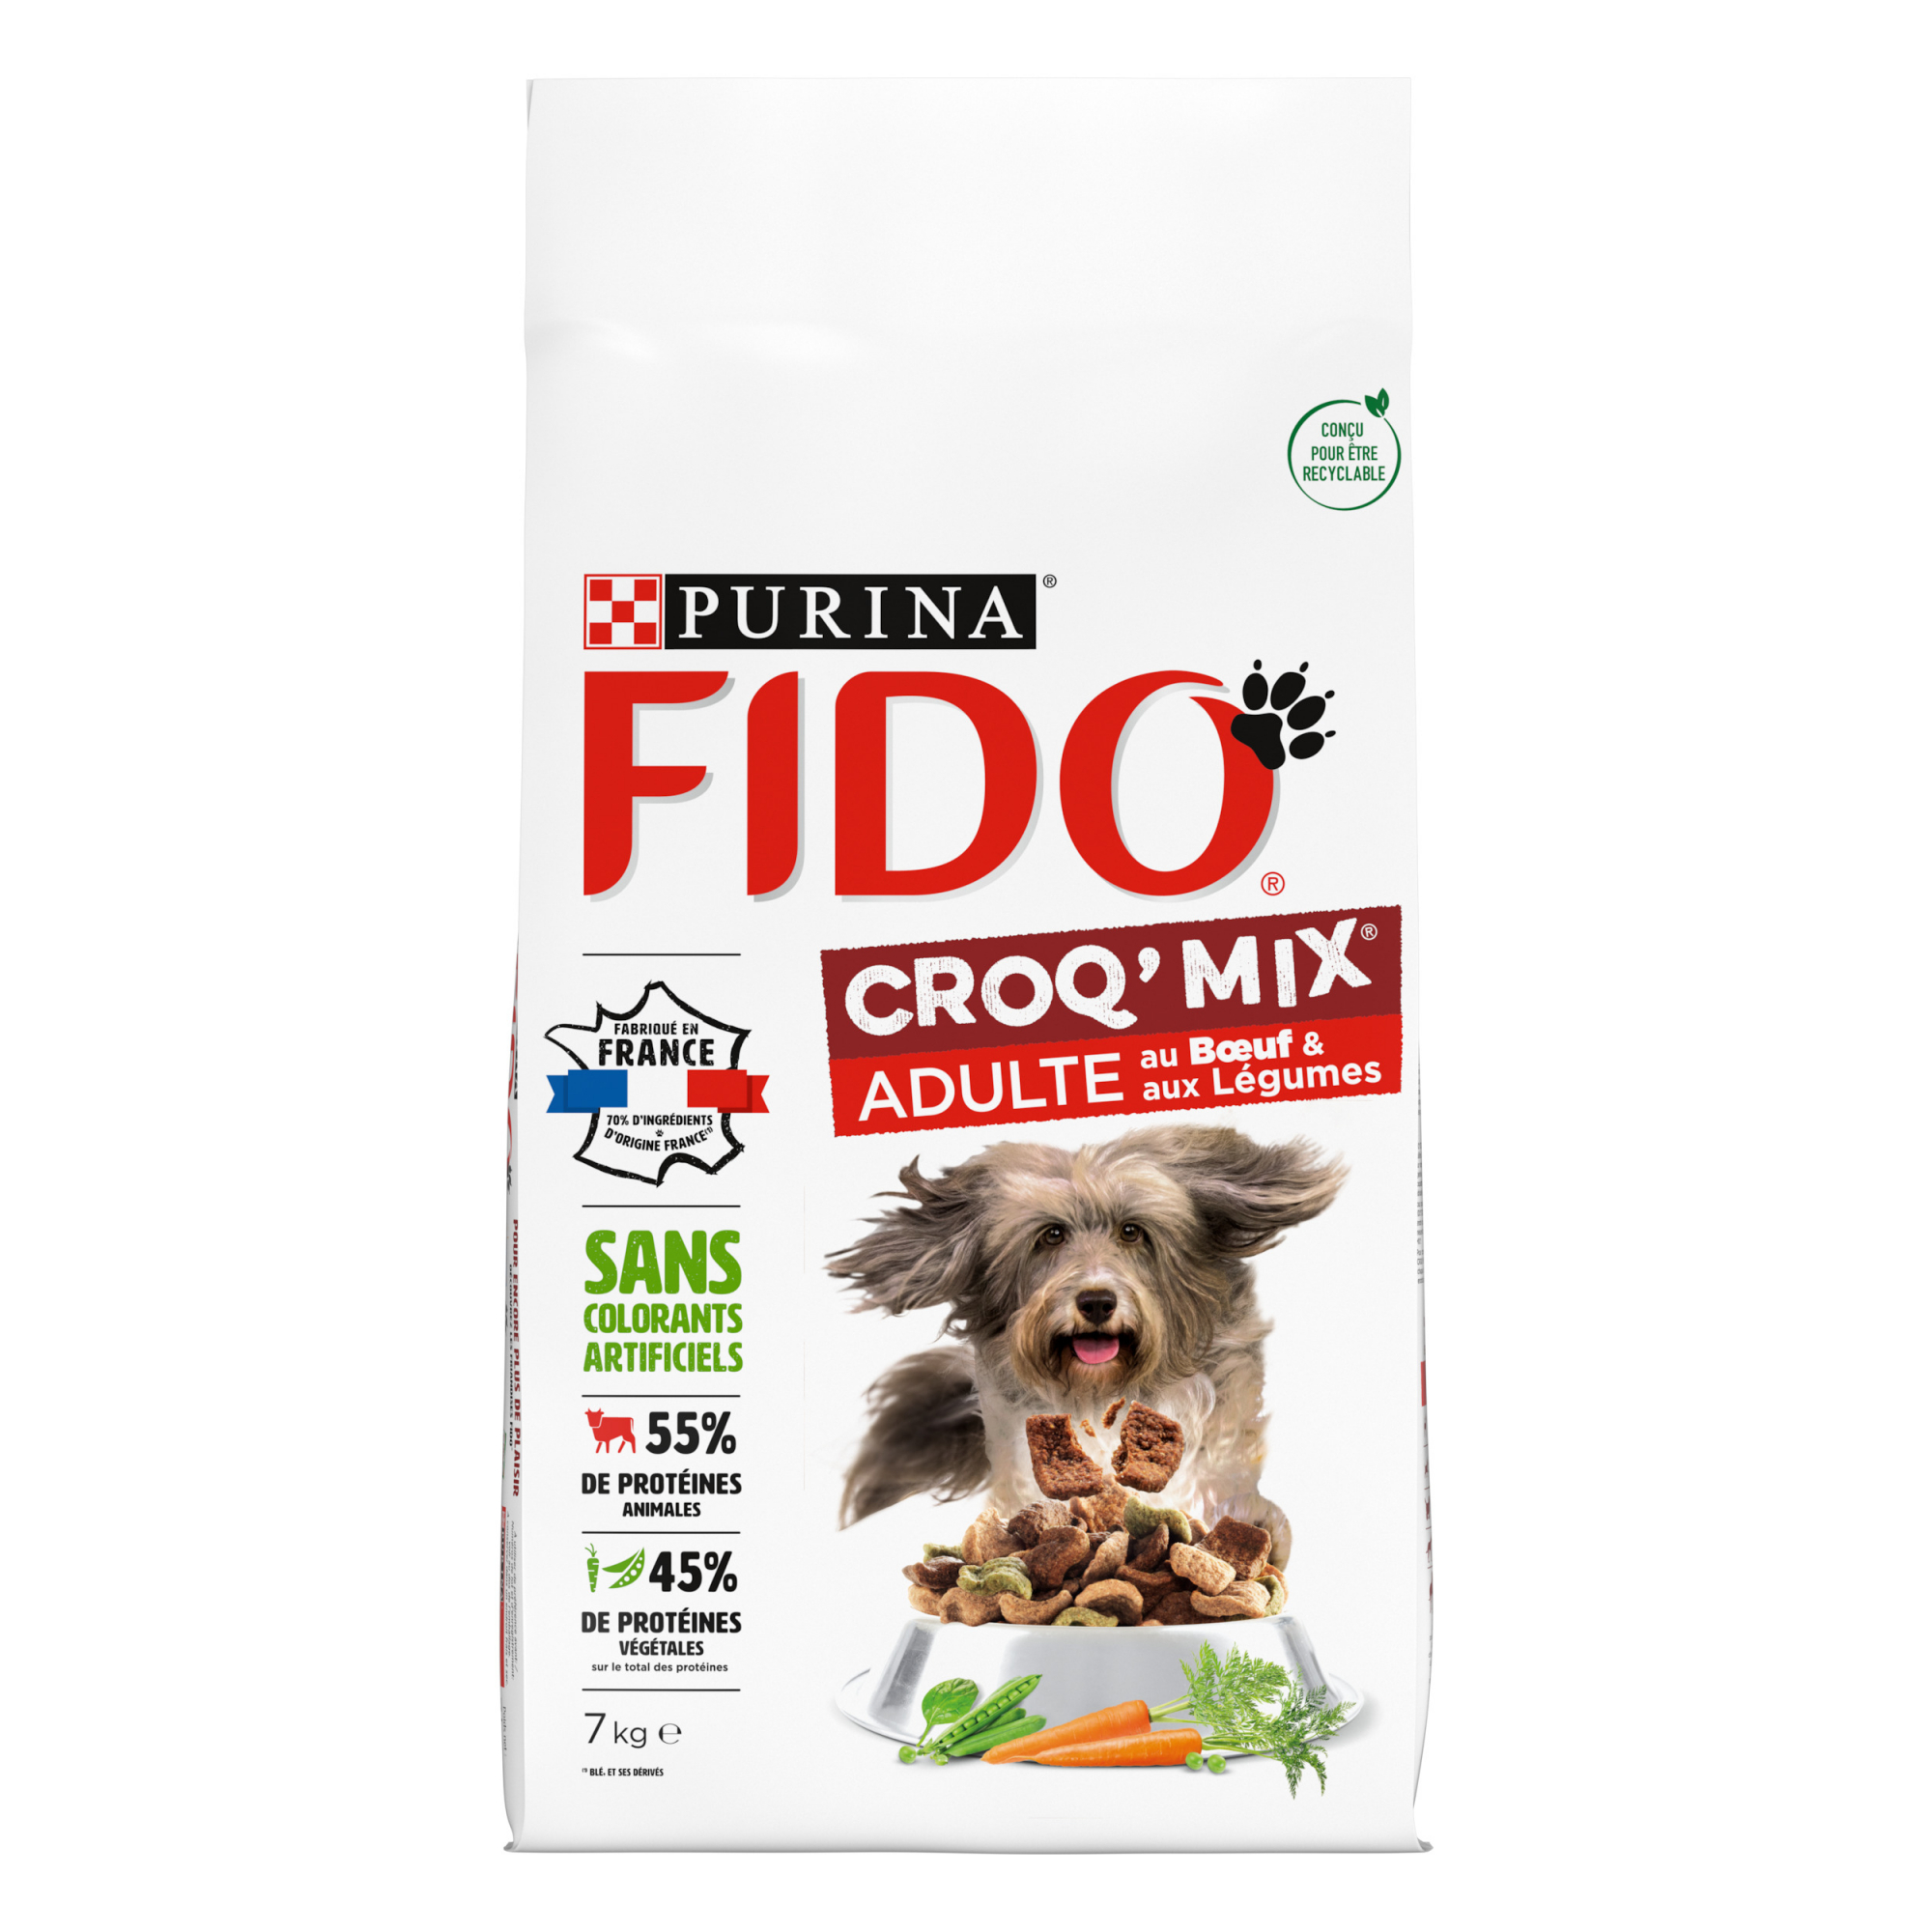 FIDO Croq Mix com carne de vaca ou frango para cães adultos